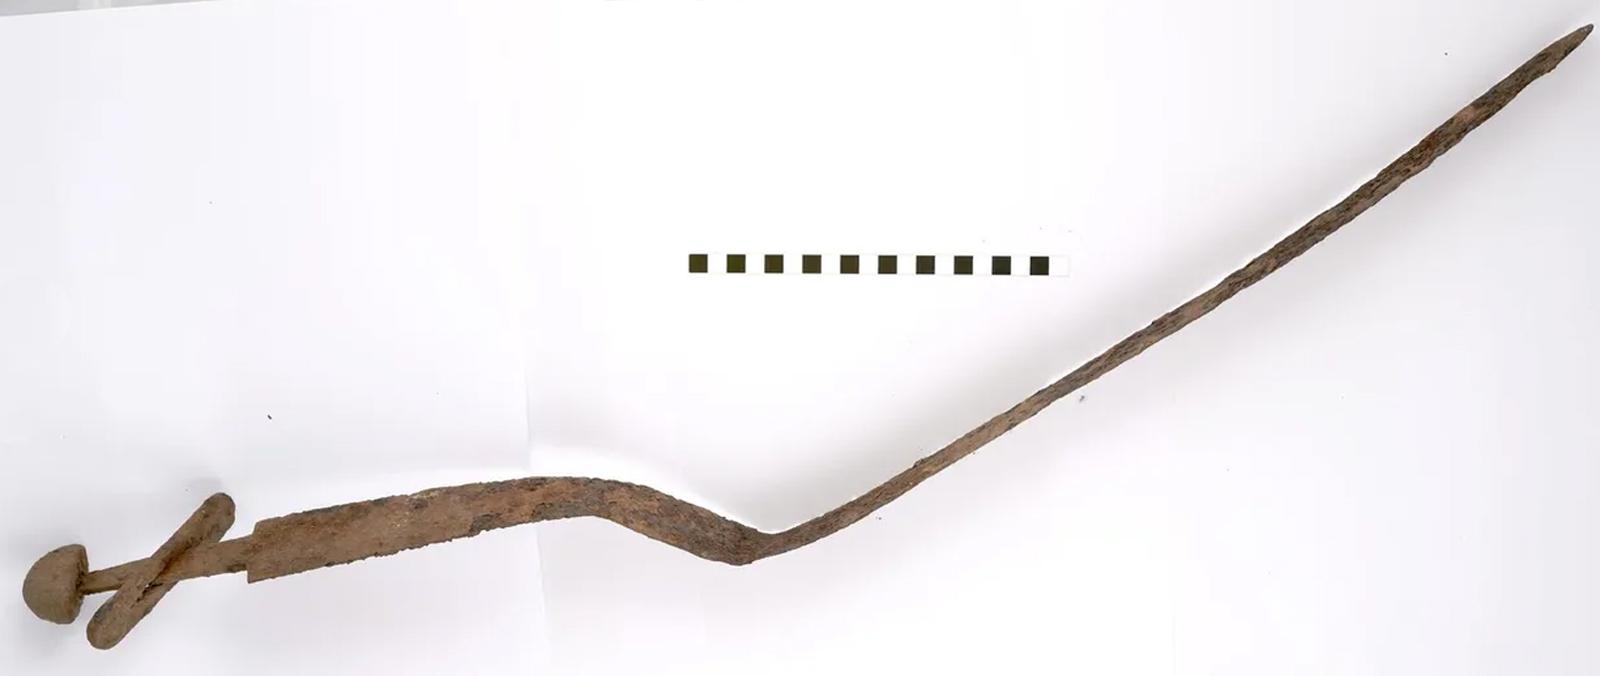 Finlande- L'épée de la fin de l'Âge Viking trouvée dans un cimetière de tombes à crémation à Janakkala - Photo: Riikka Väisänen/ Direction des musées de Finlande